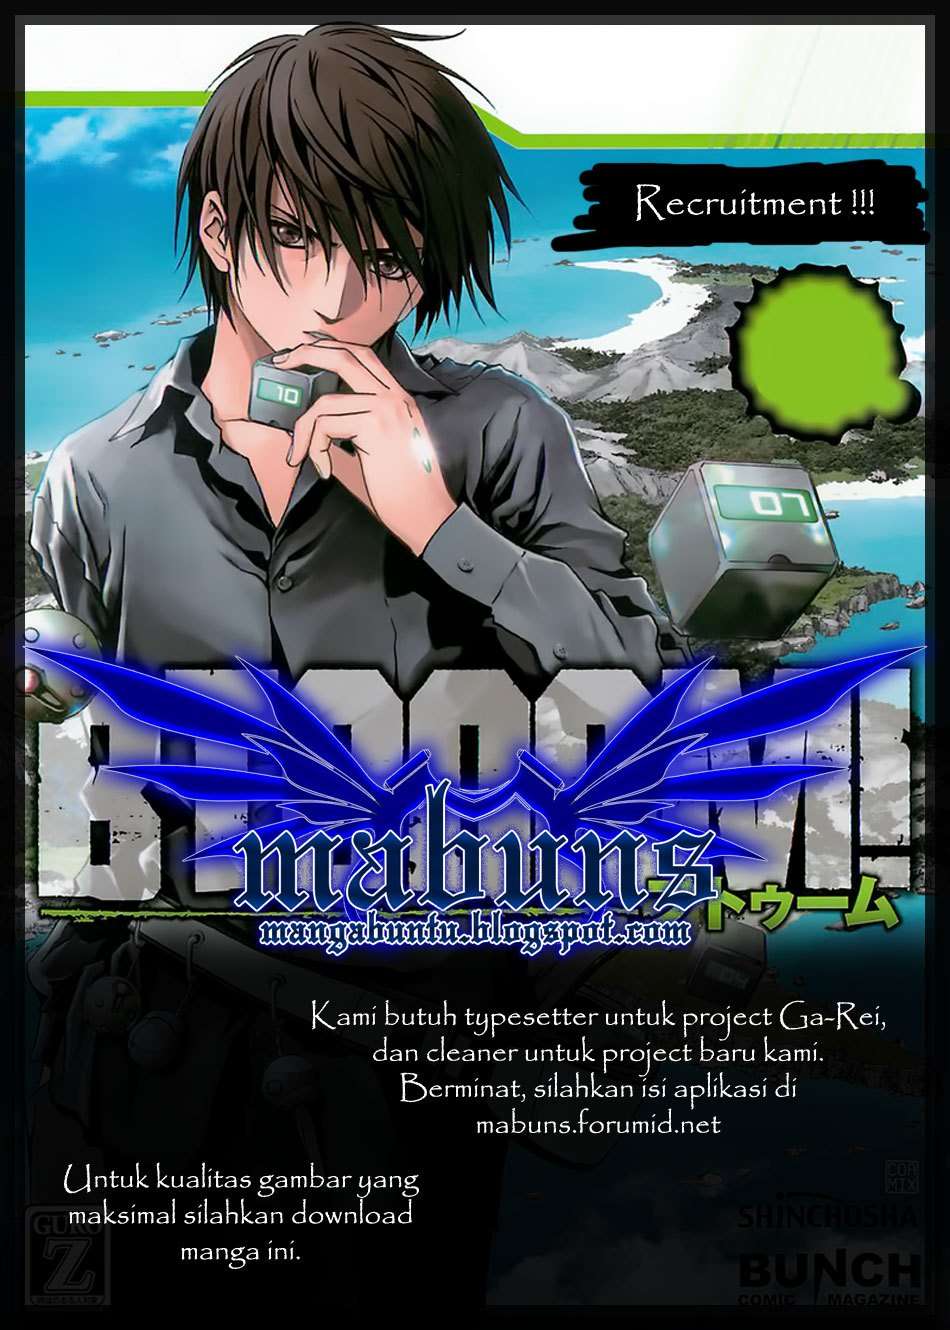 BTOOOM! Chapter 29